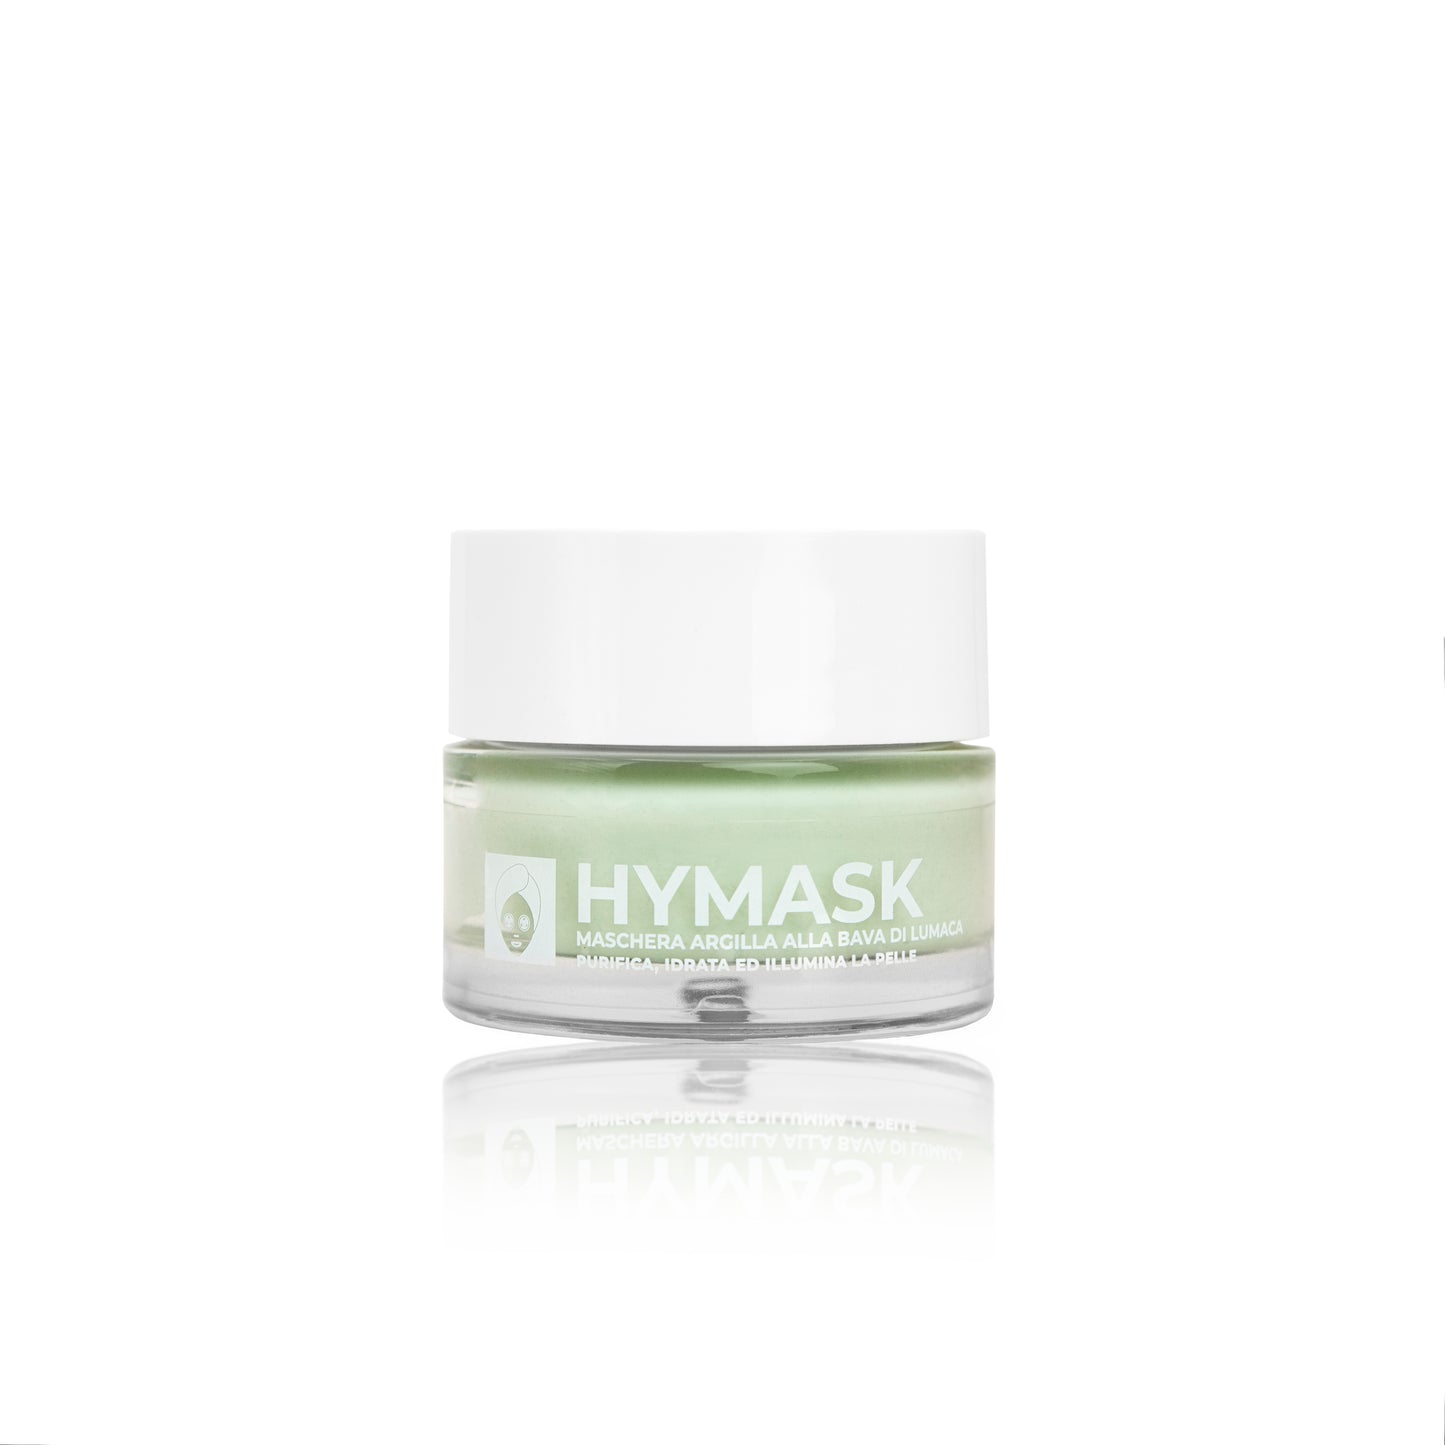 Hymask - face mask